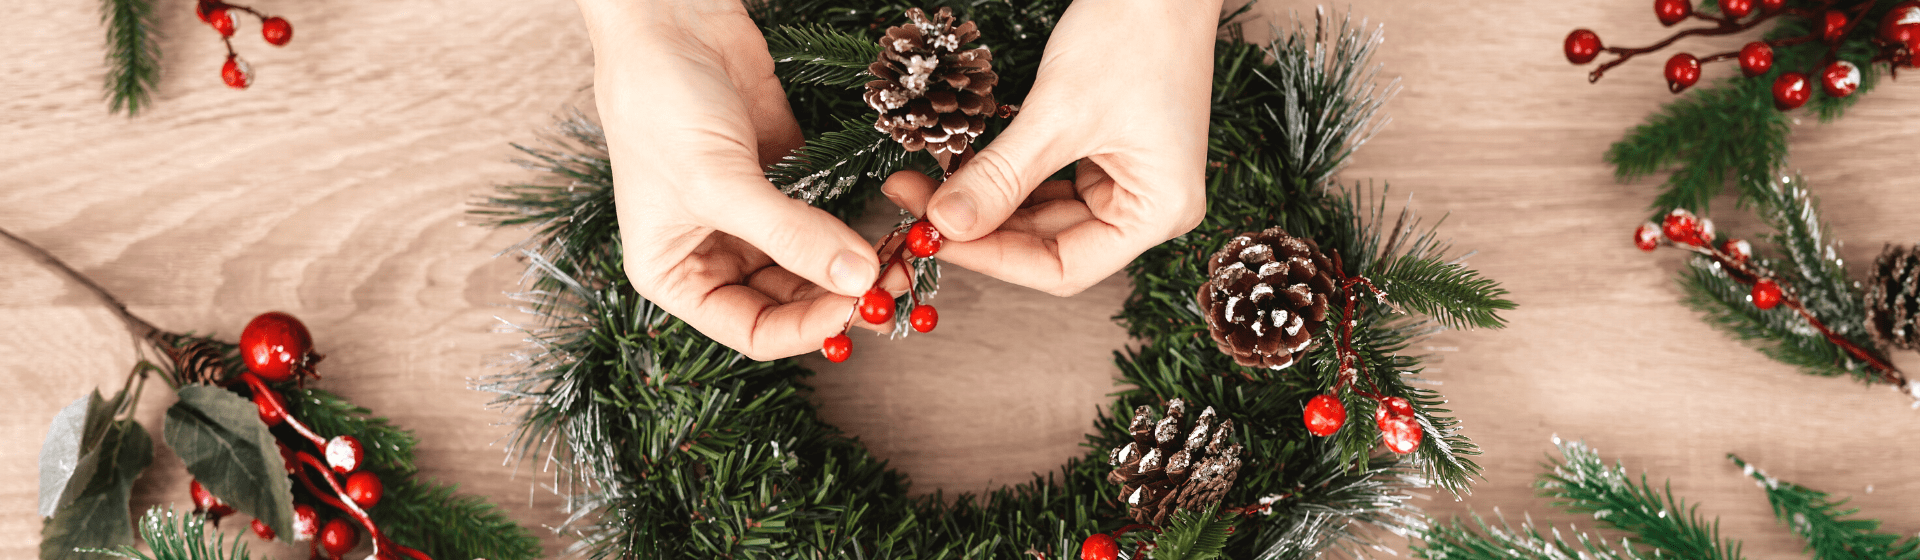 Decoração de Natal 2020: como decorar a guirlanda de Natal?